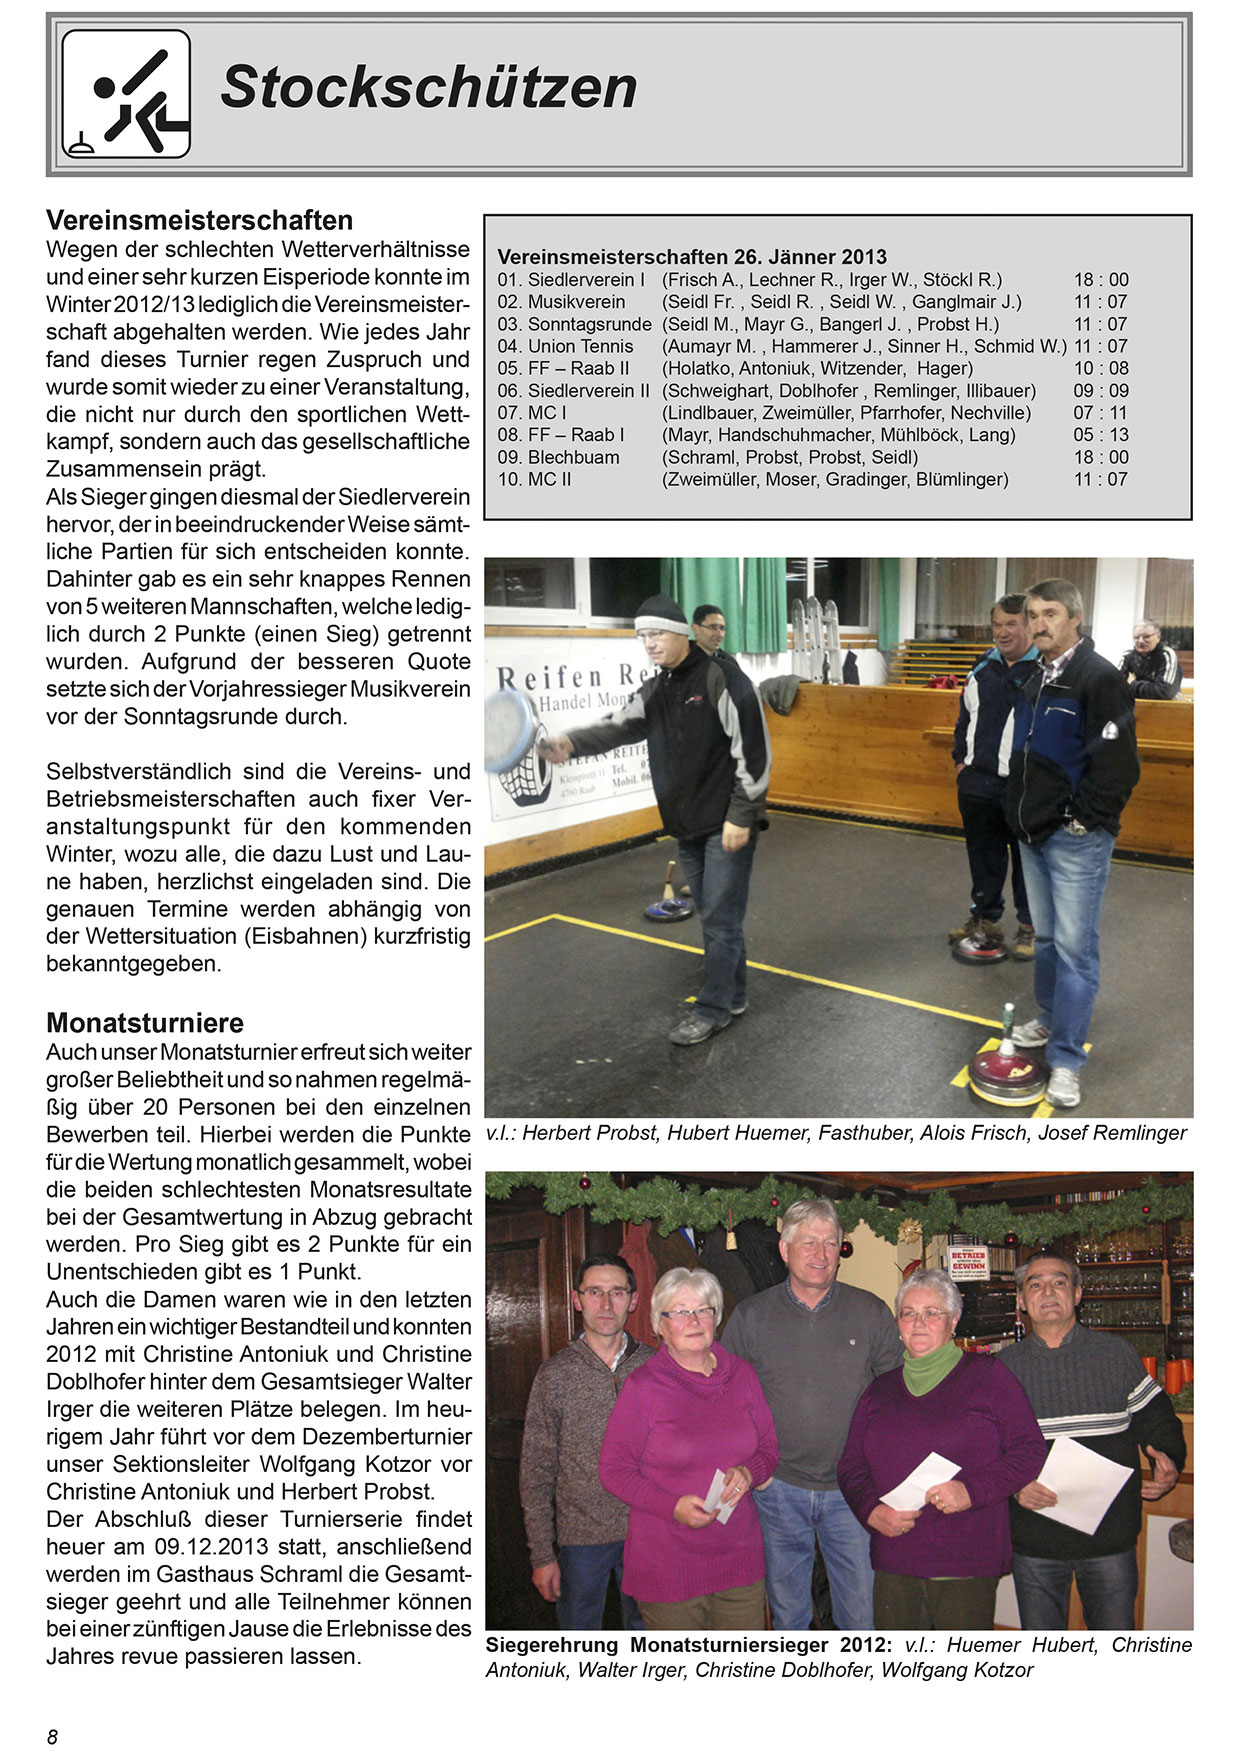 Unionzeitung 2013 - Seite 08